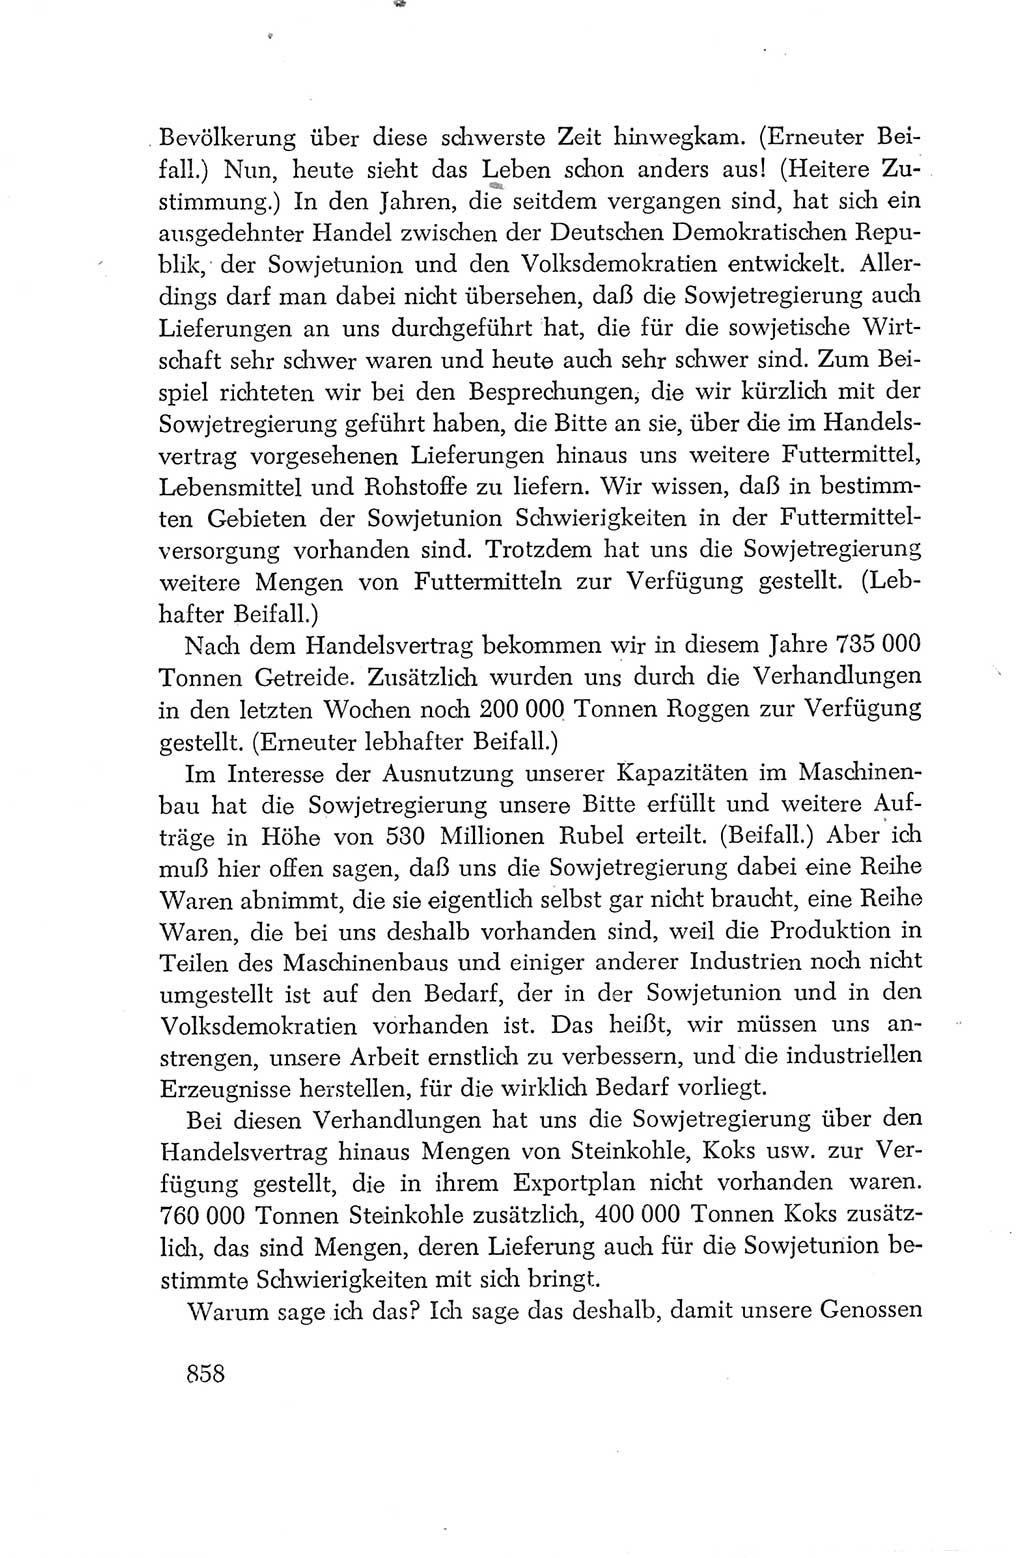 Protokoll der Verhandlungen des Ⅳ. Parteitages der Sozialistischen Einheitspartei Deutschlands (SED) [Deutsche Demokratische Republik (DDR)] 1954, Seite 858